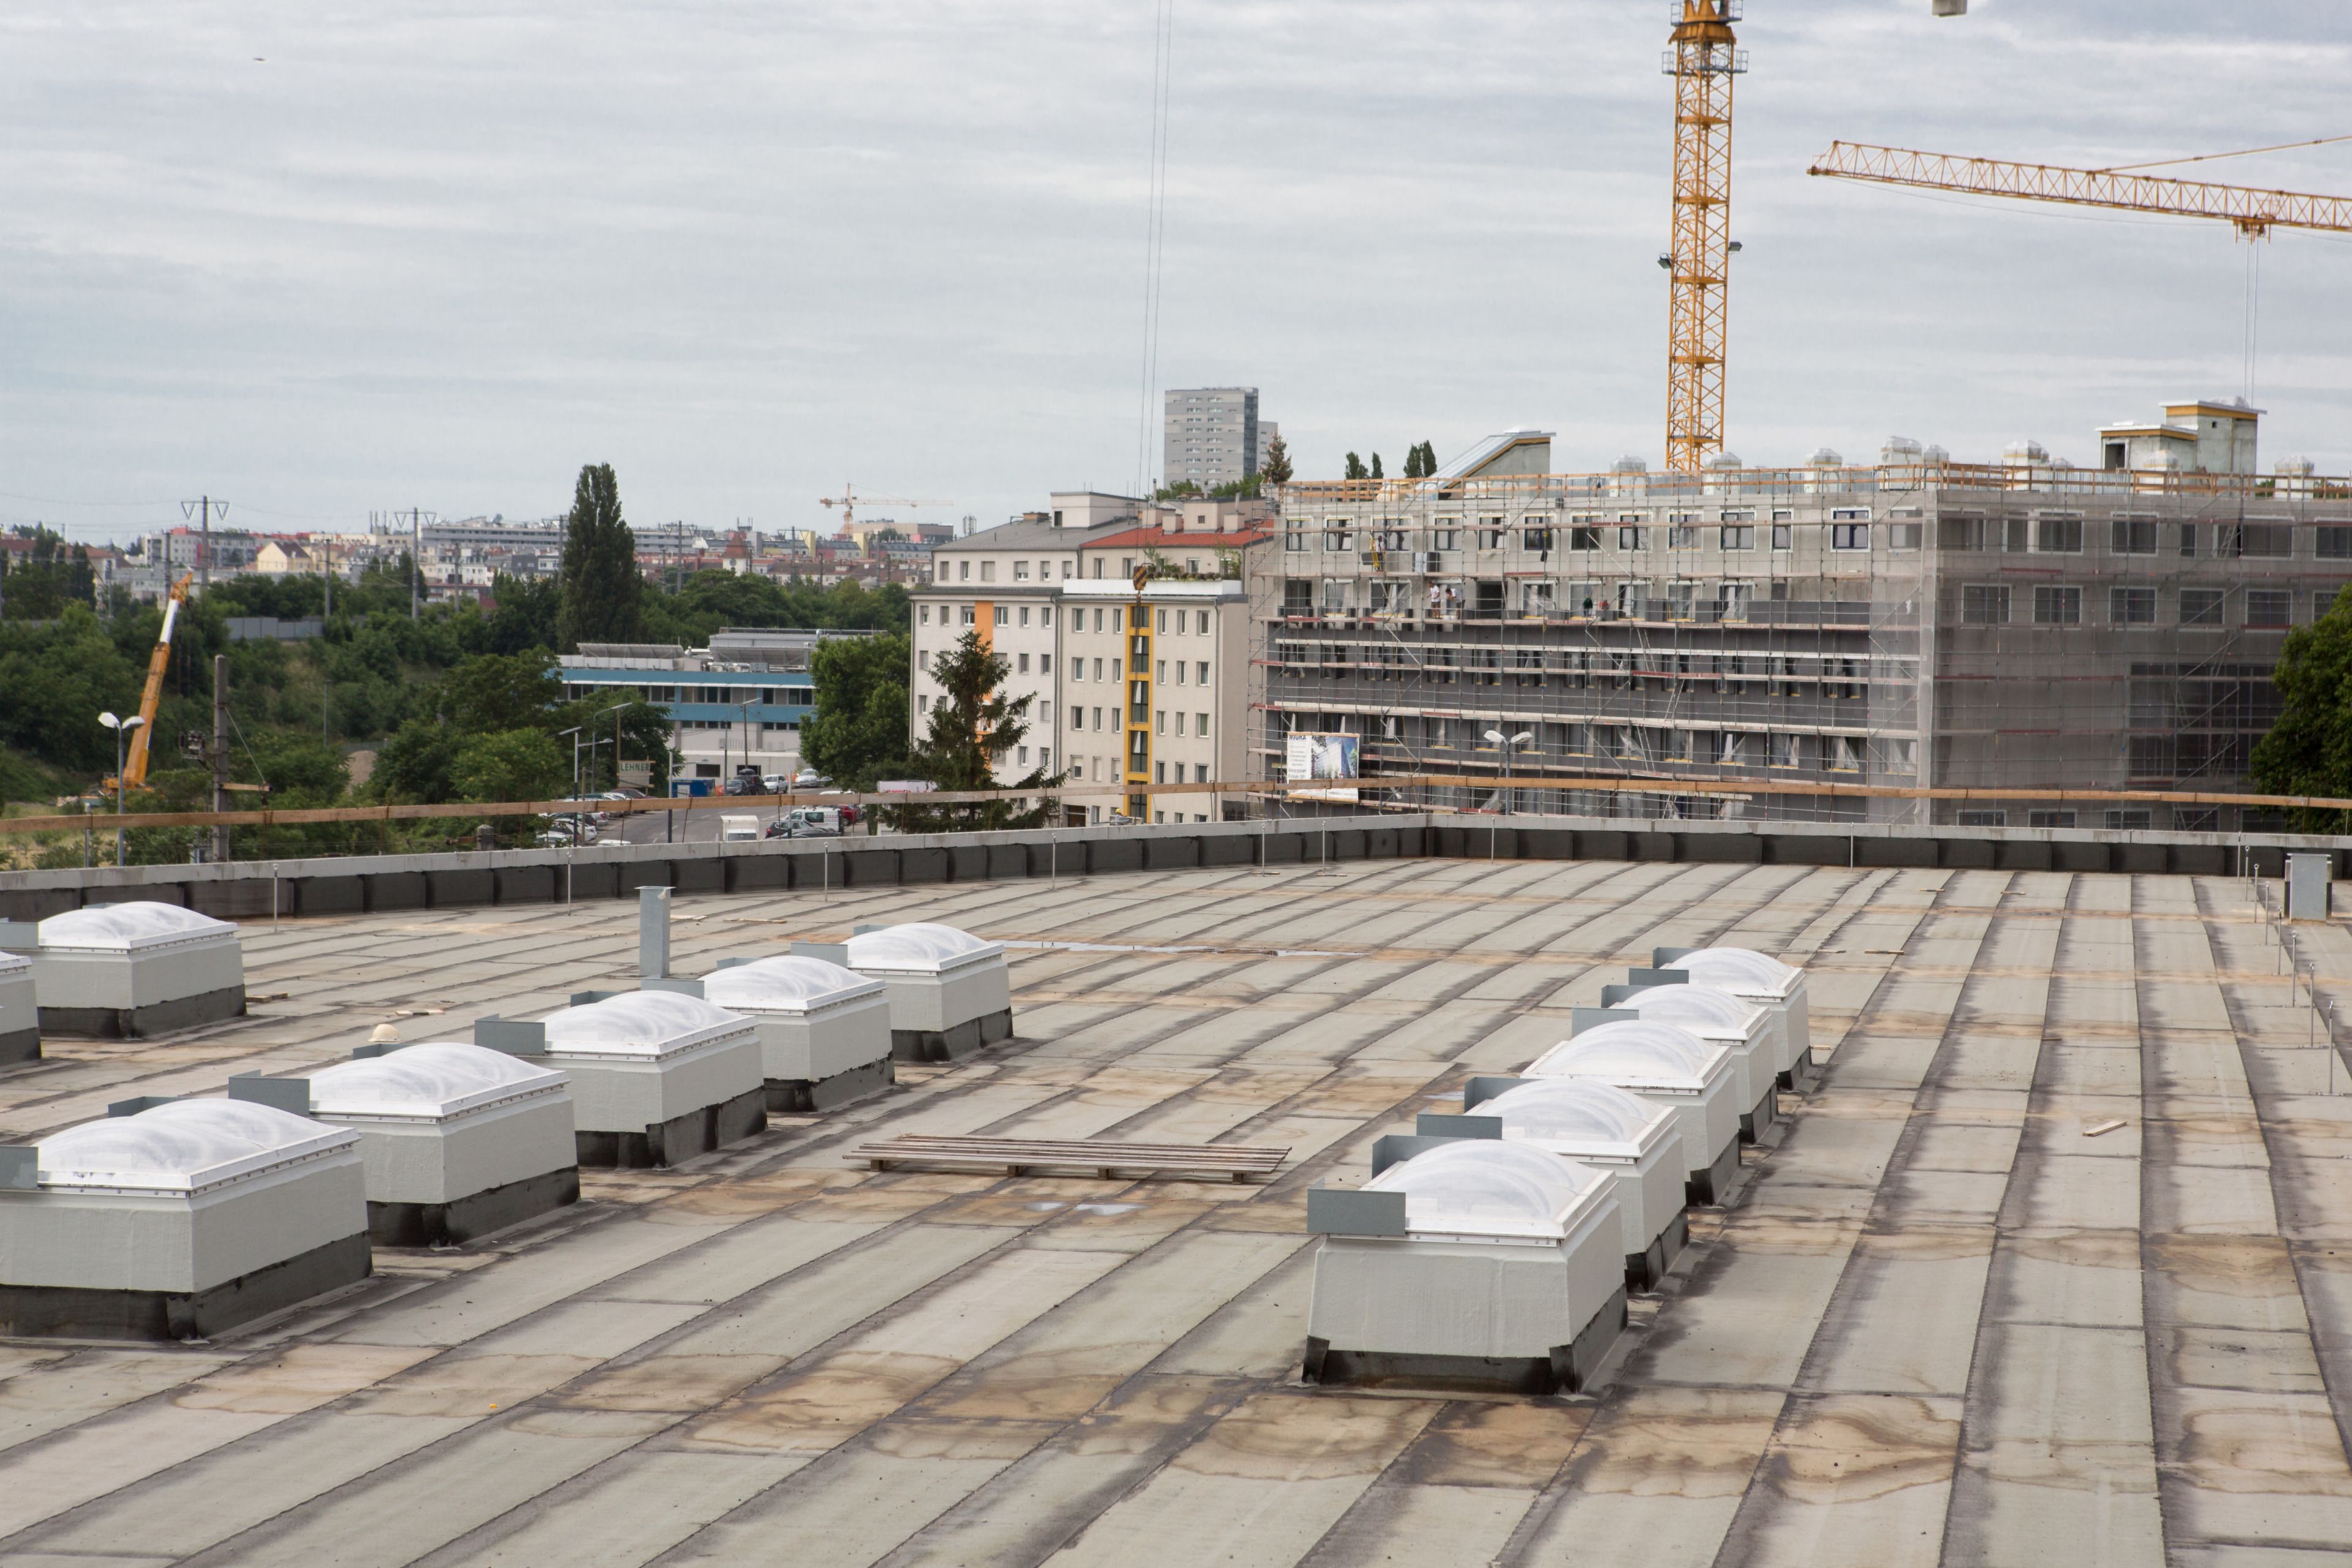 Rund 40.000 m² groß ist das Dach des Smart Campus